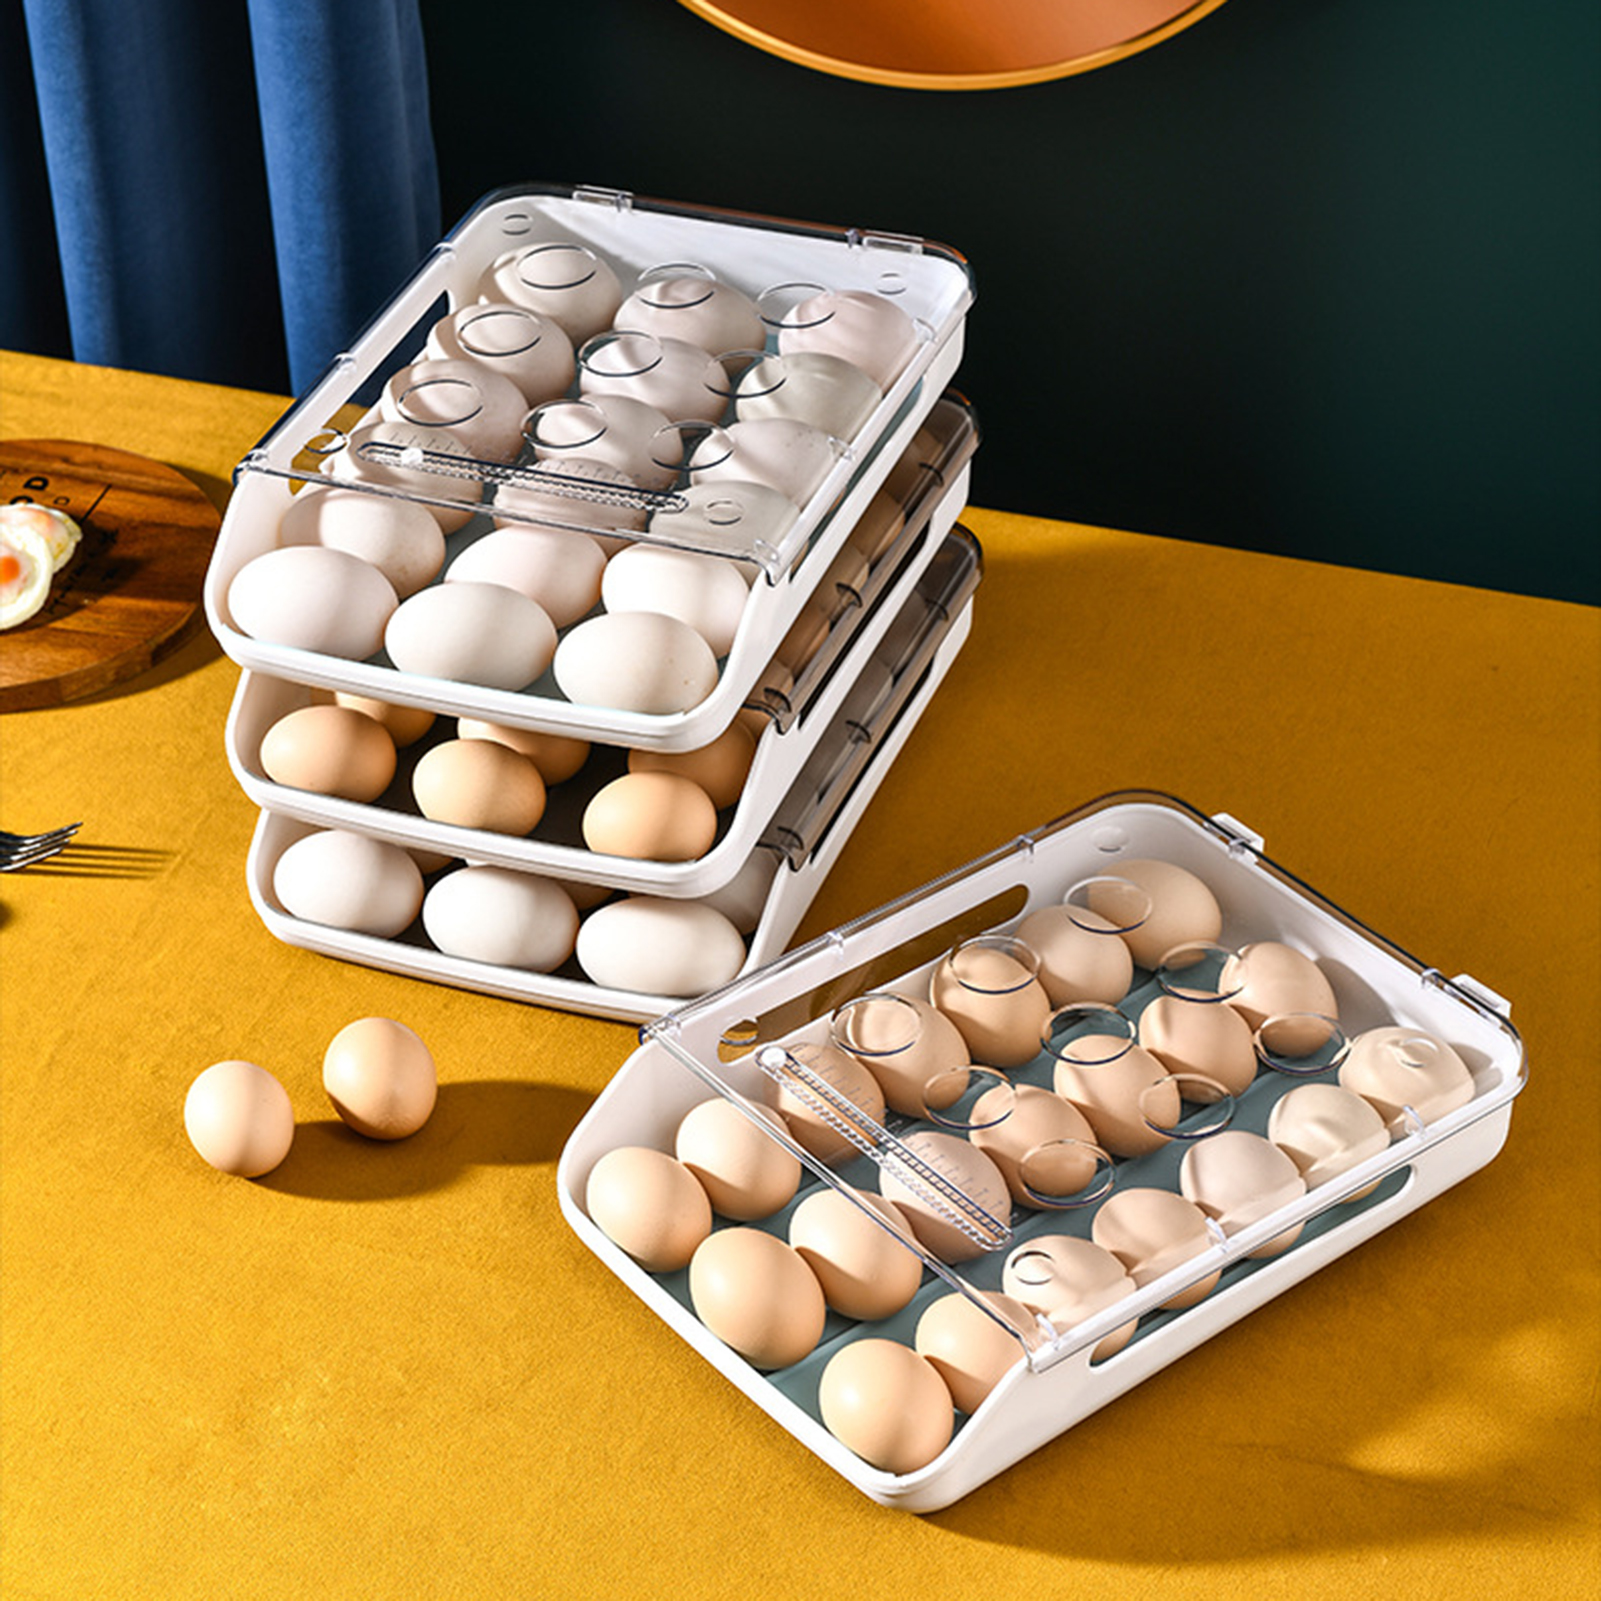 Nhà tích trữ nhiều trứng thì các chị em đừng quên sắm cả mấy chiếc khay đựng này vừa xinh xắn lại gọn gàng - Ảnh 5.